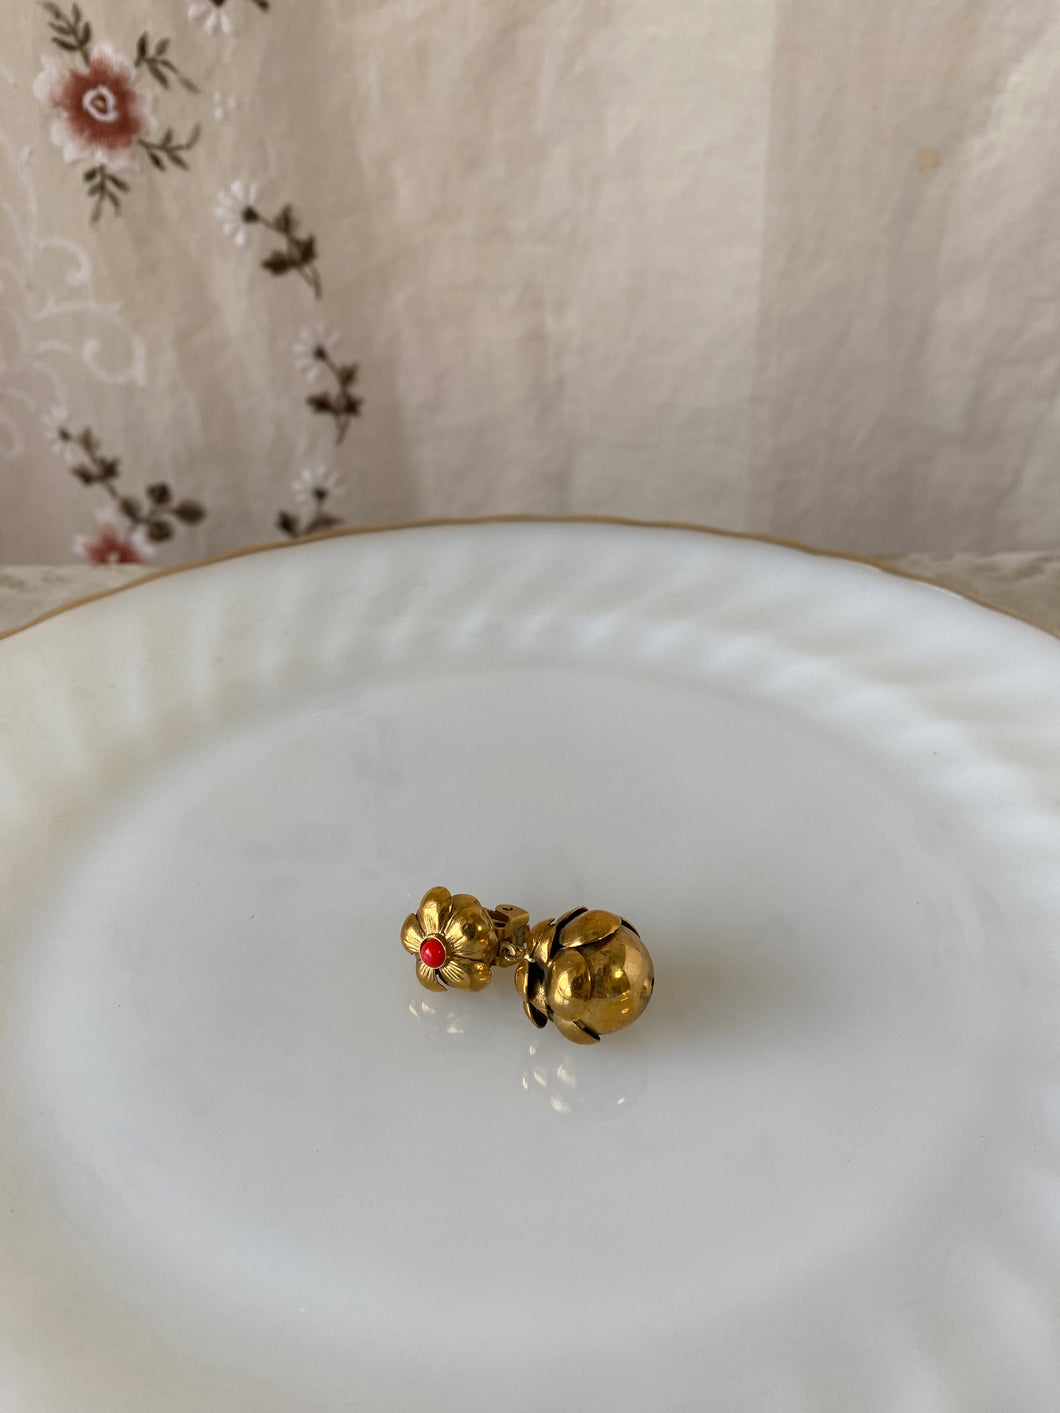 flower&acorn earring from FRANCE